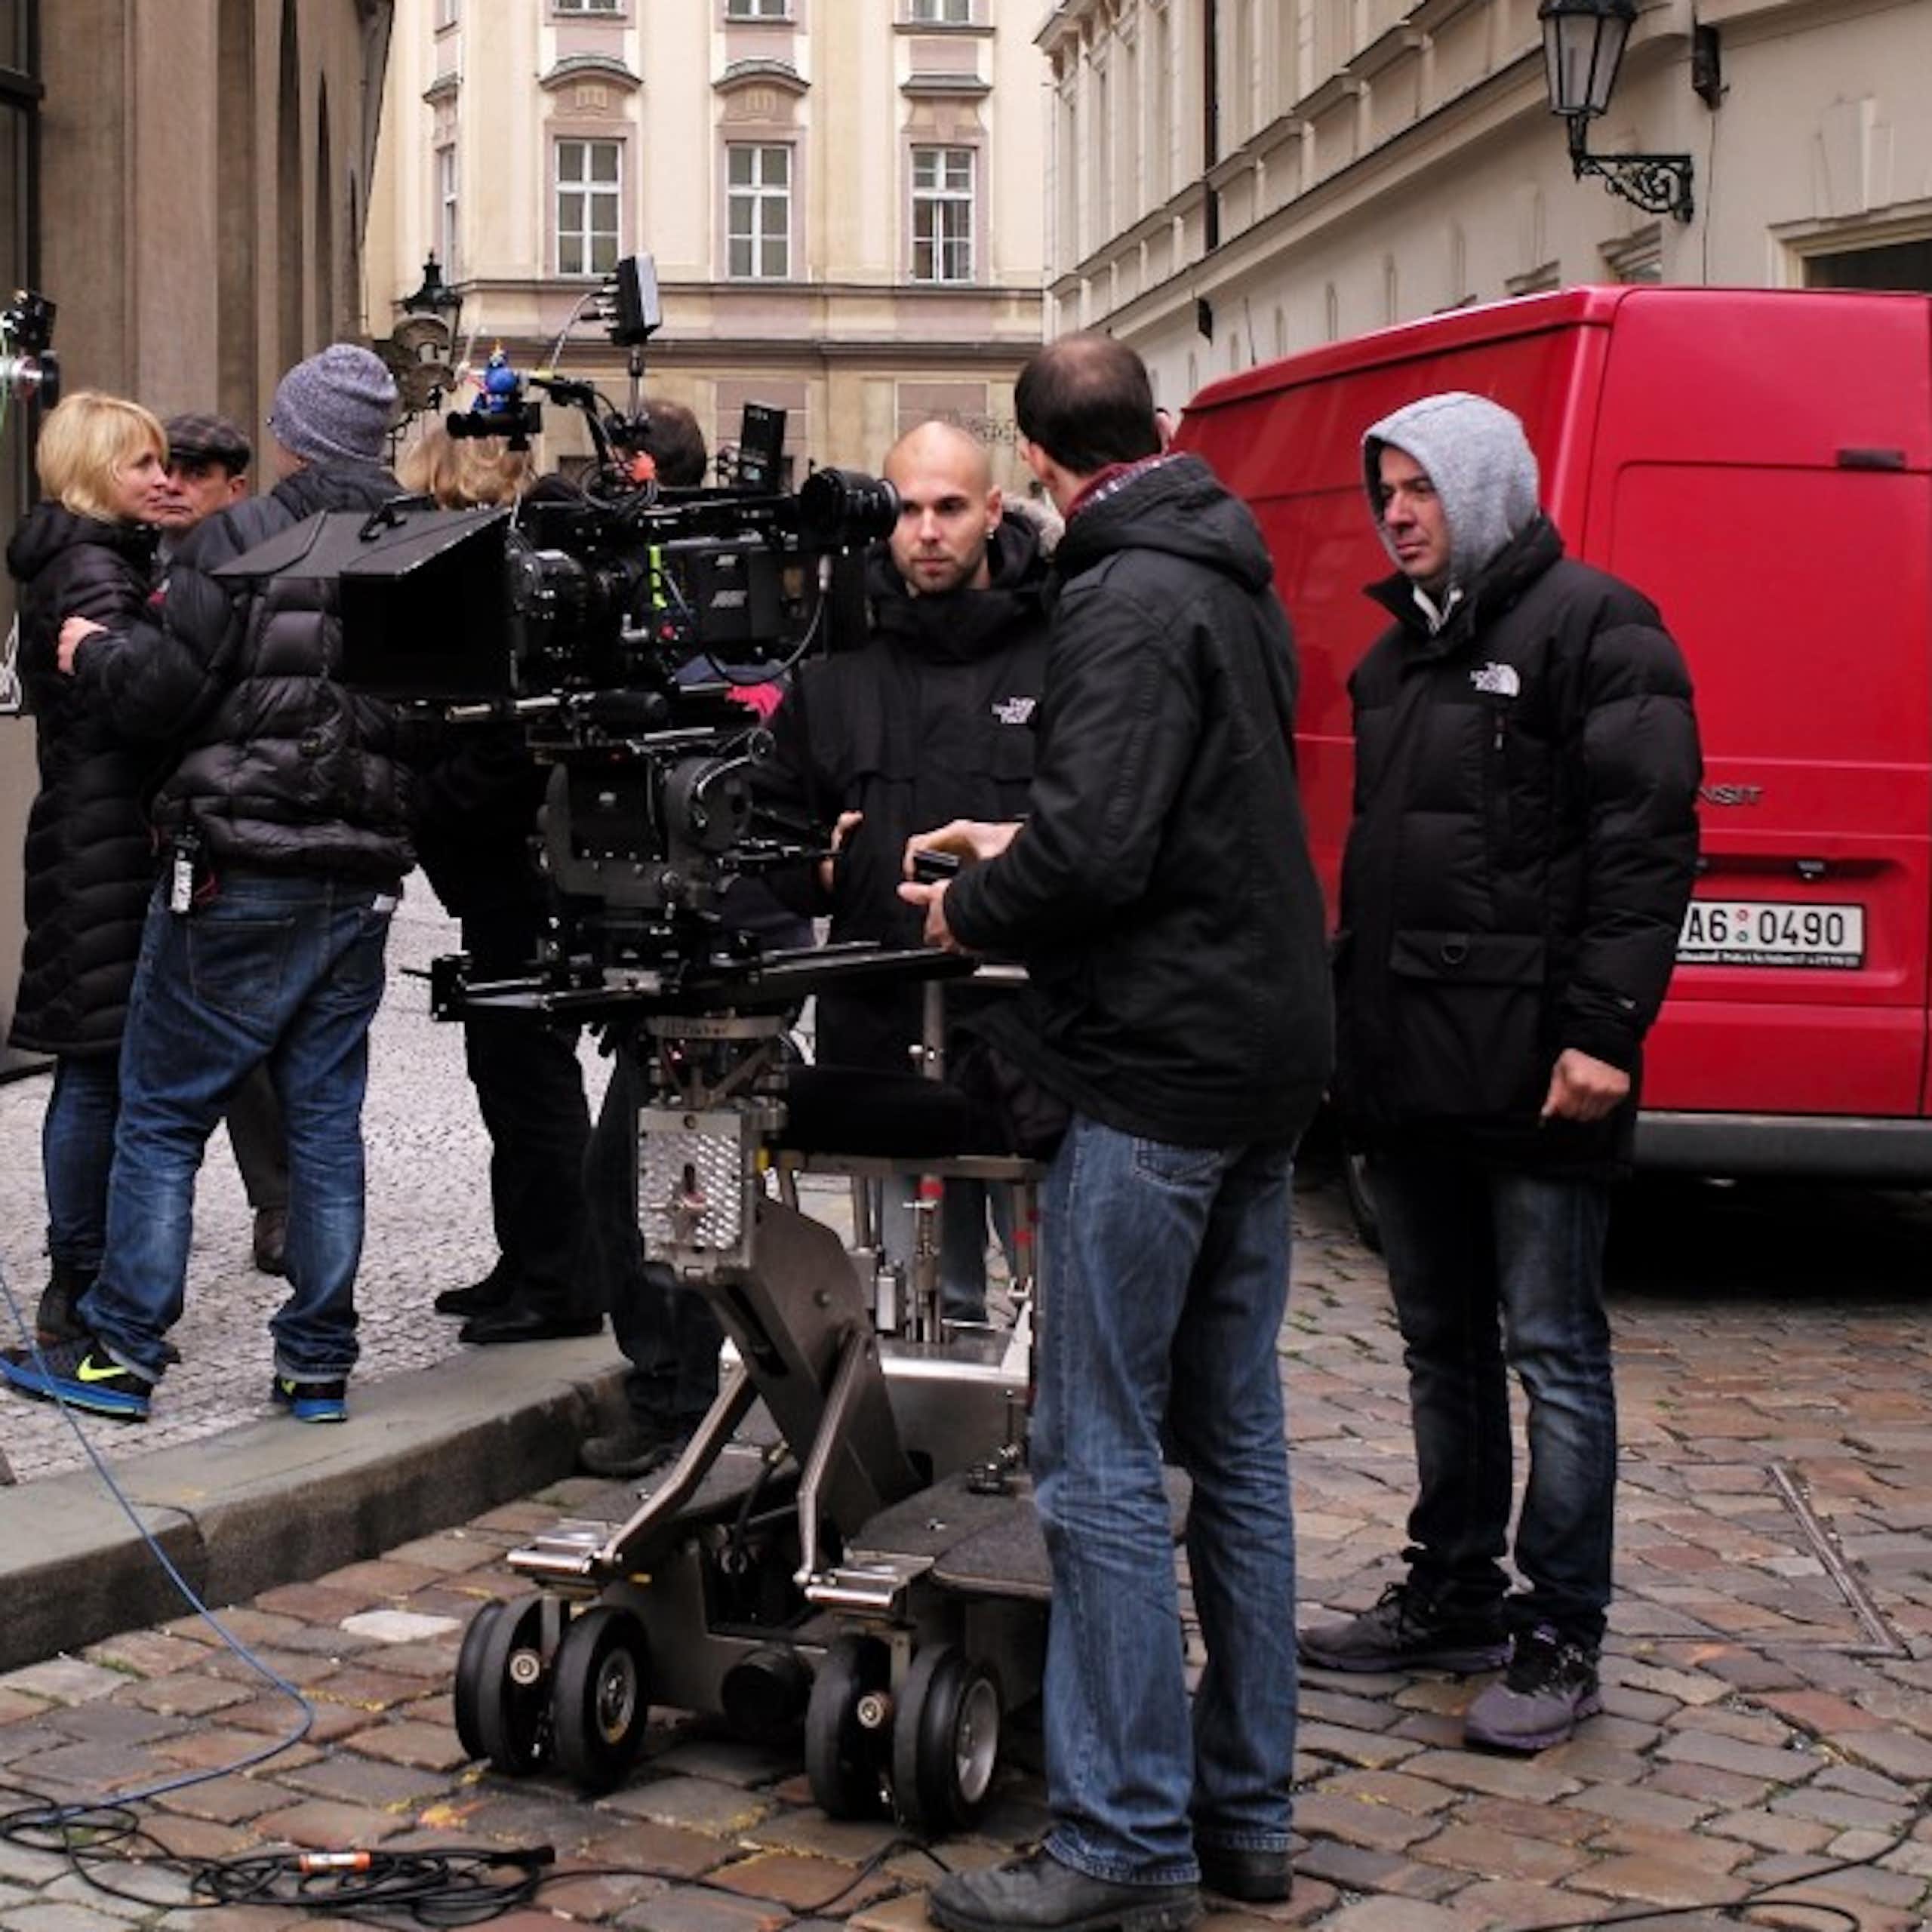 Tournage de film dans les rues de Prague 